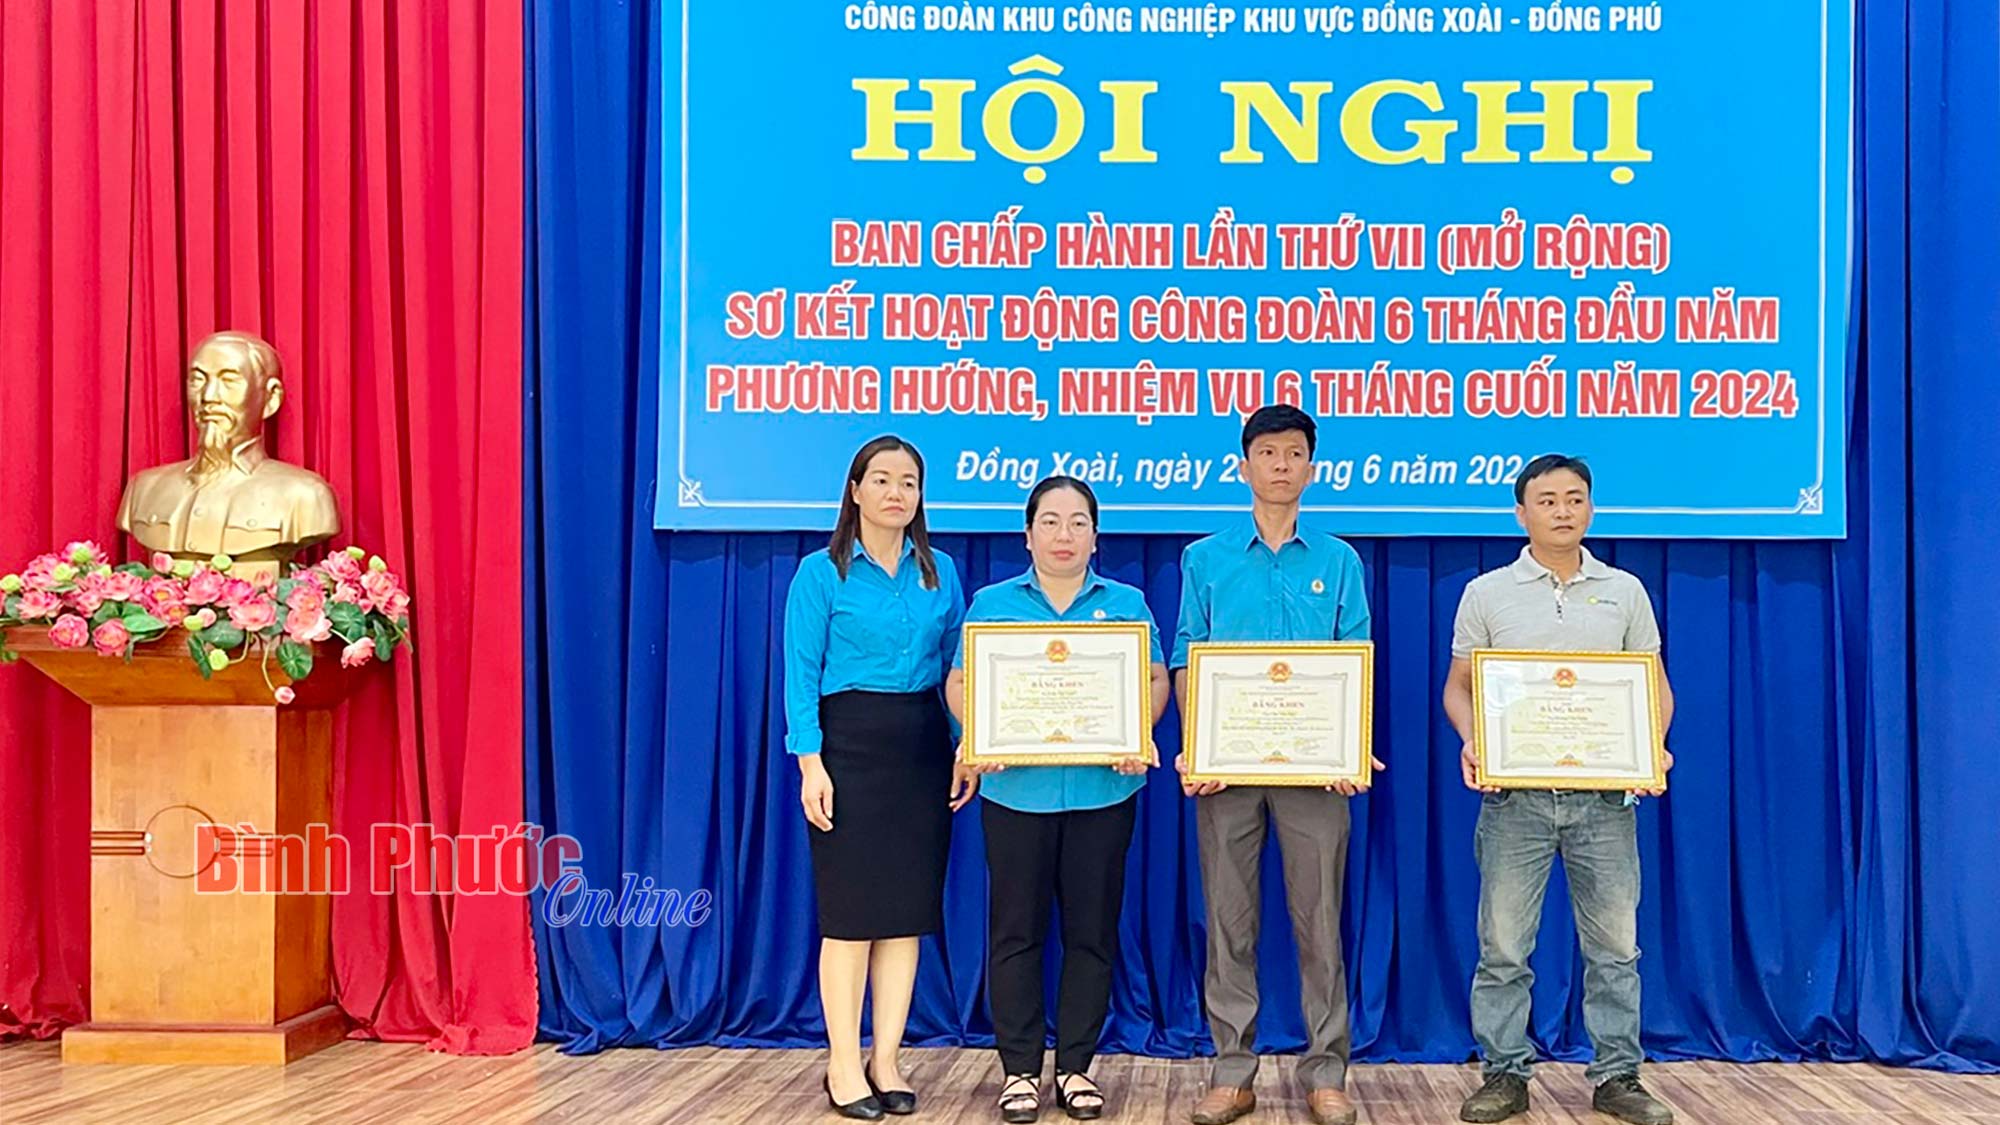 Công đoàn Khu công nghiệp khu vực Đồng Xoài - Đồng Phú phát triển mới 2.113 đoàn viên